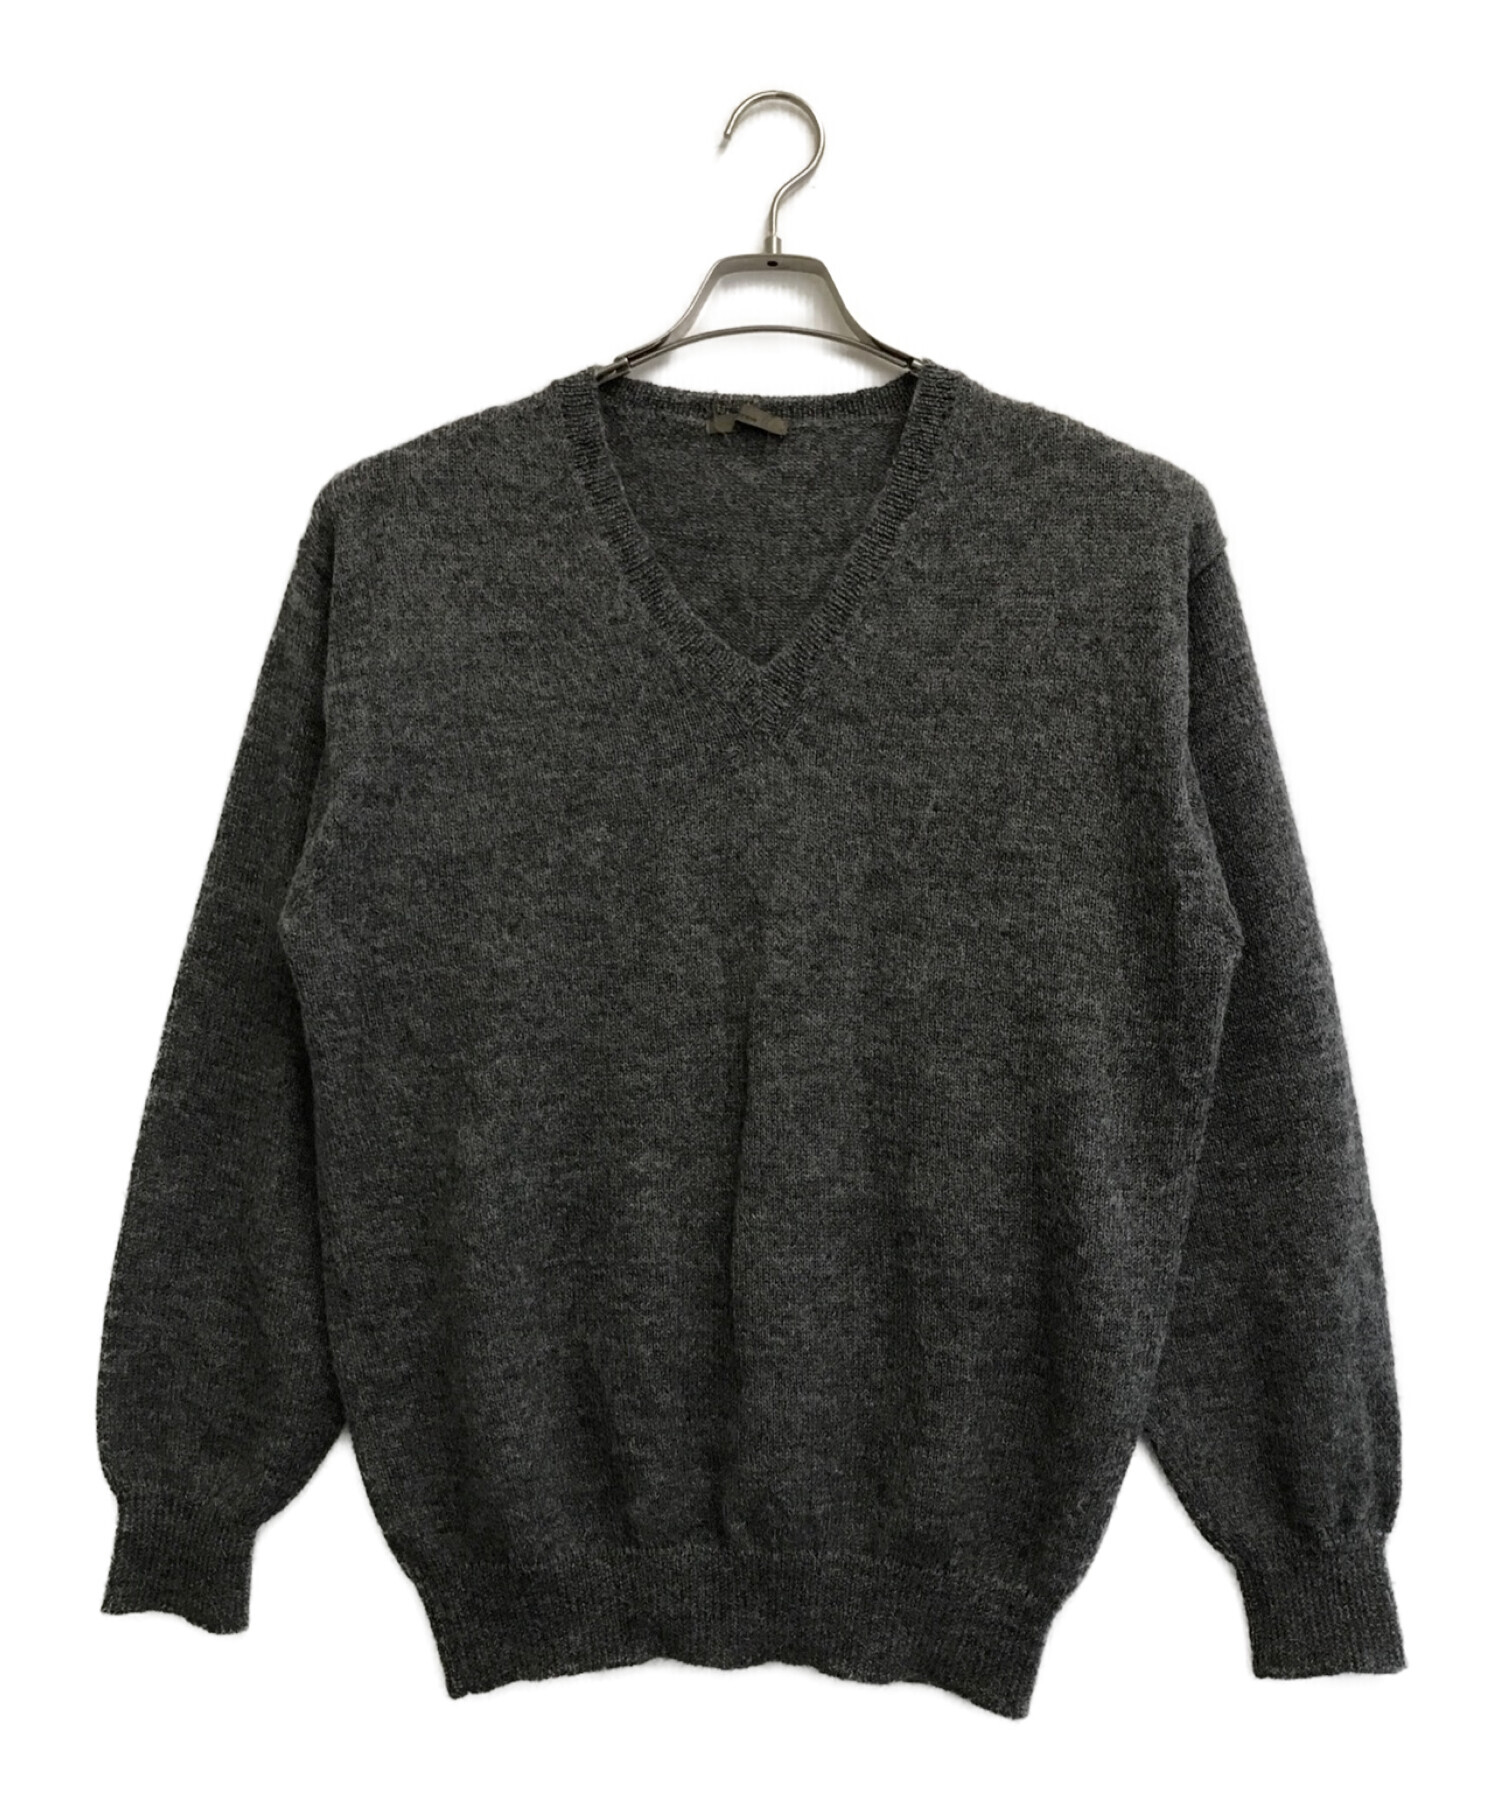 ワイズ 長袖セーター サイズ3 L メンズ -